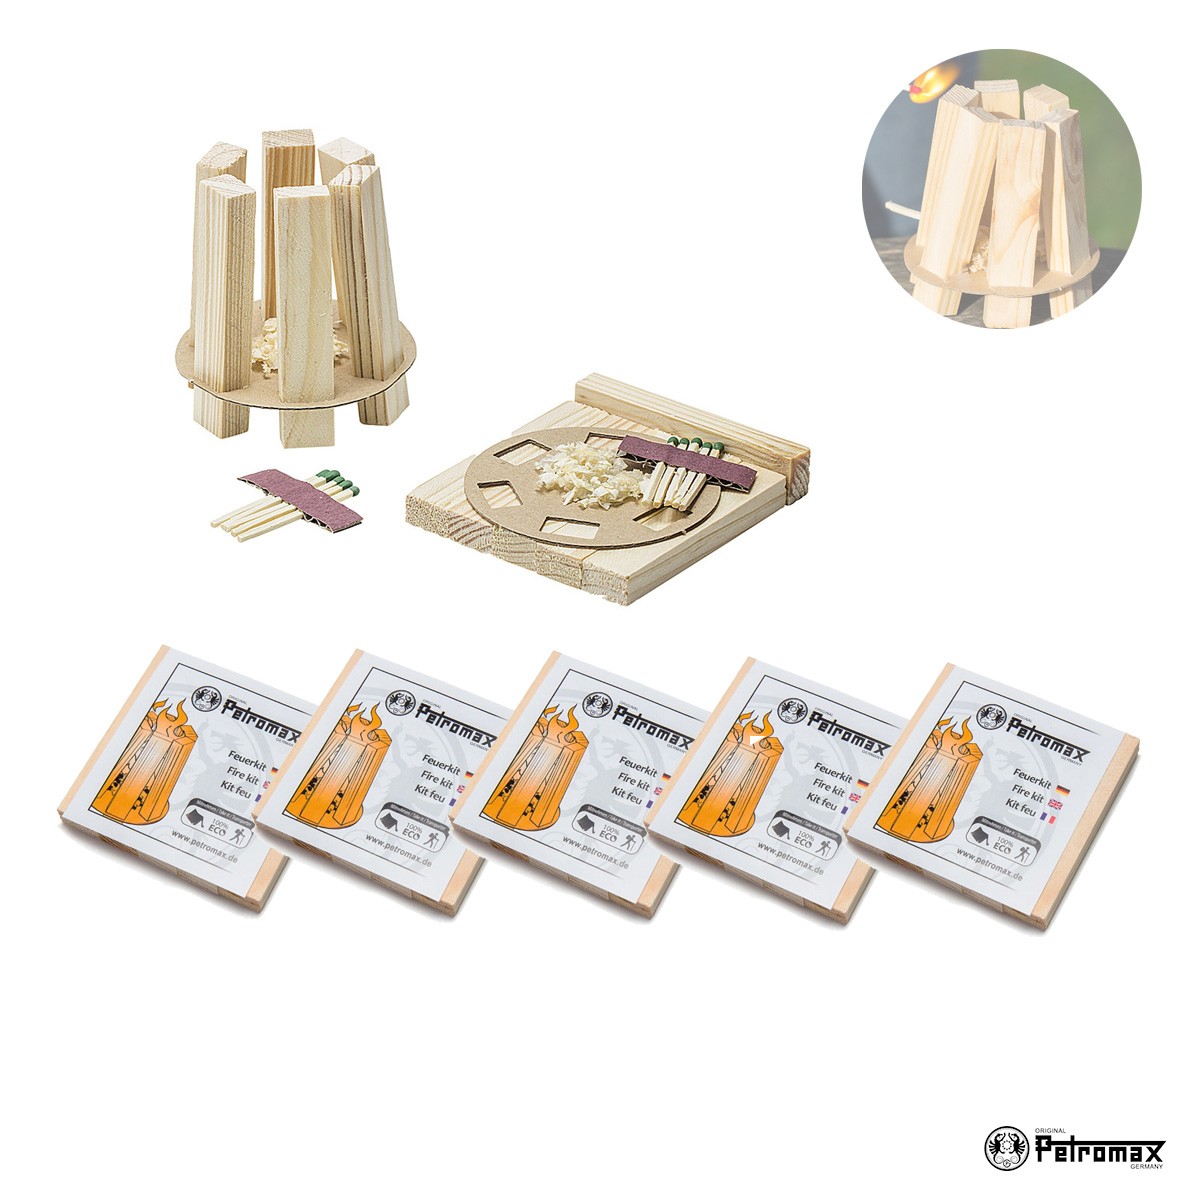 Petromax 5er Set Feuerkit kit – Praktische Anzündhilfen